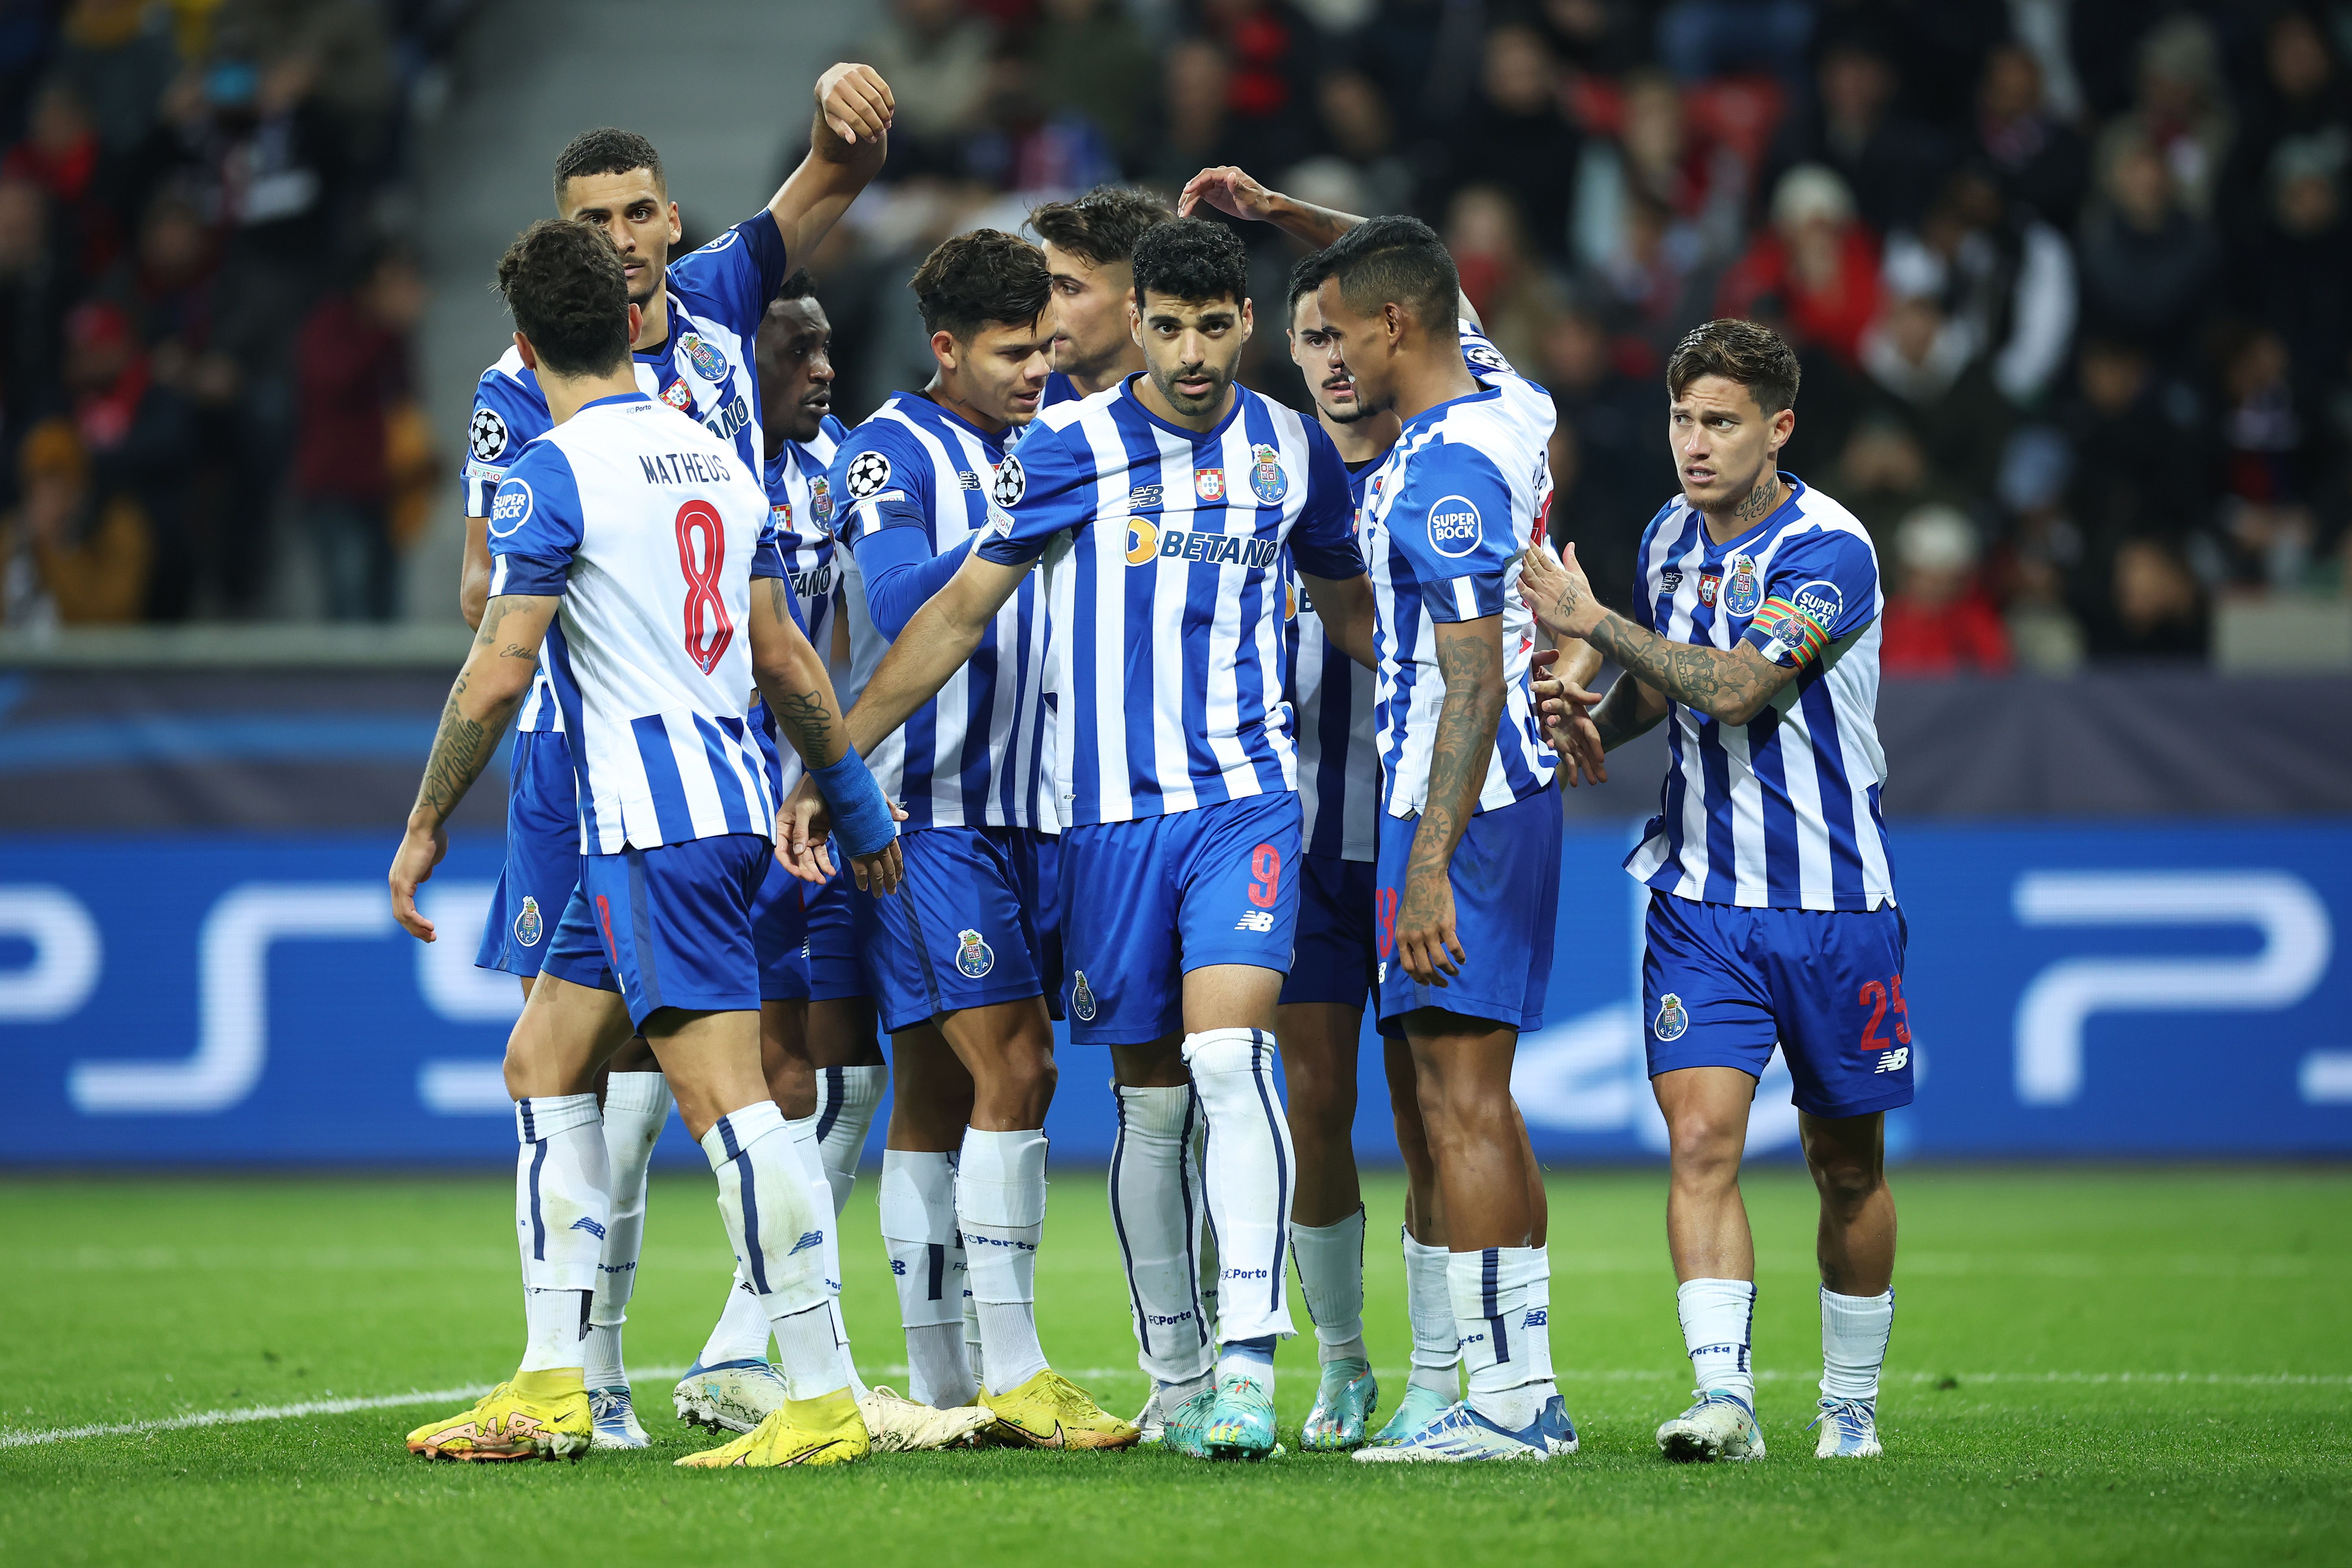 Porto celebrate scoring in the Champions League.